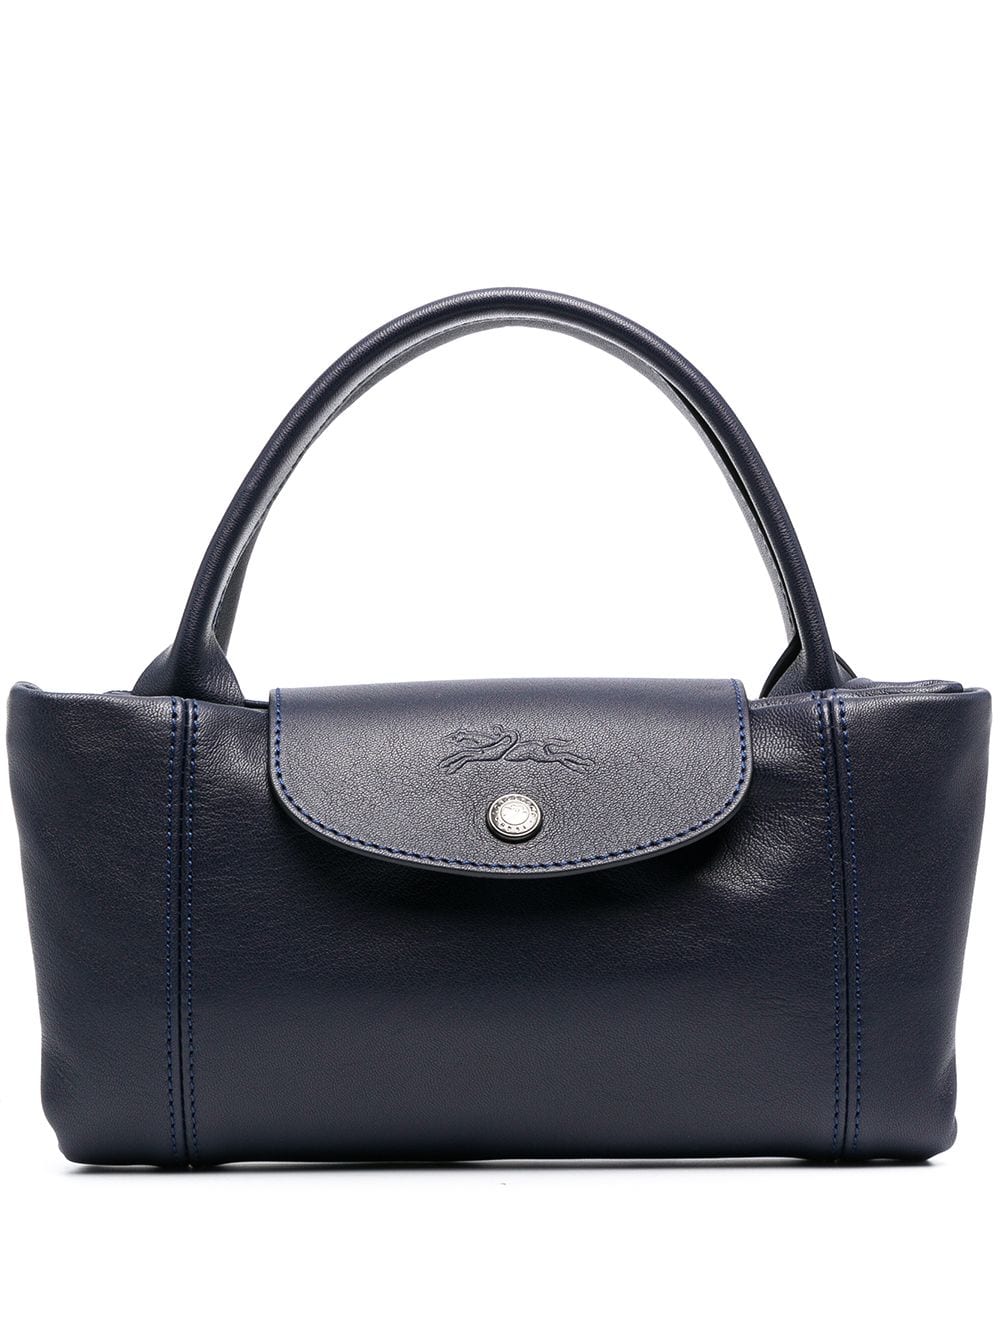 Longchamp Le Pliage Cuir Medium Handbag with Shoulder Strap